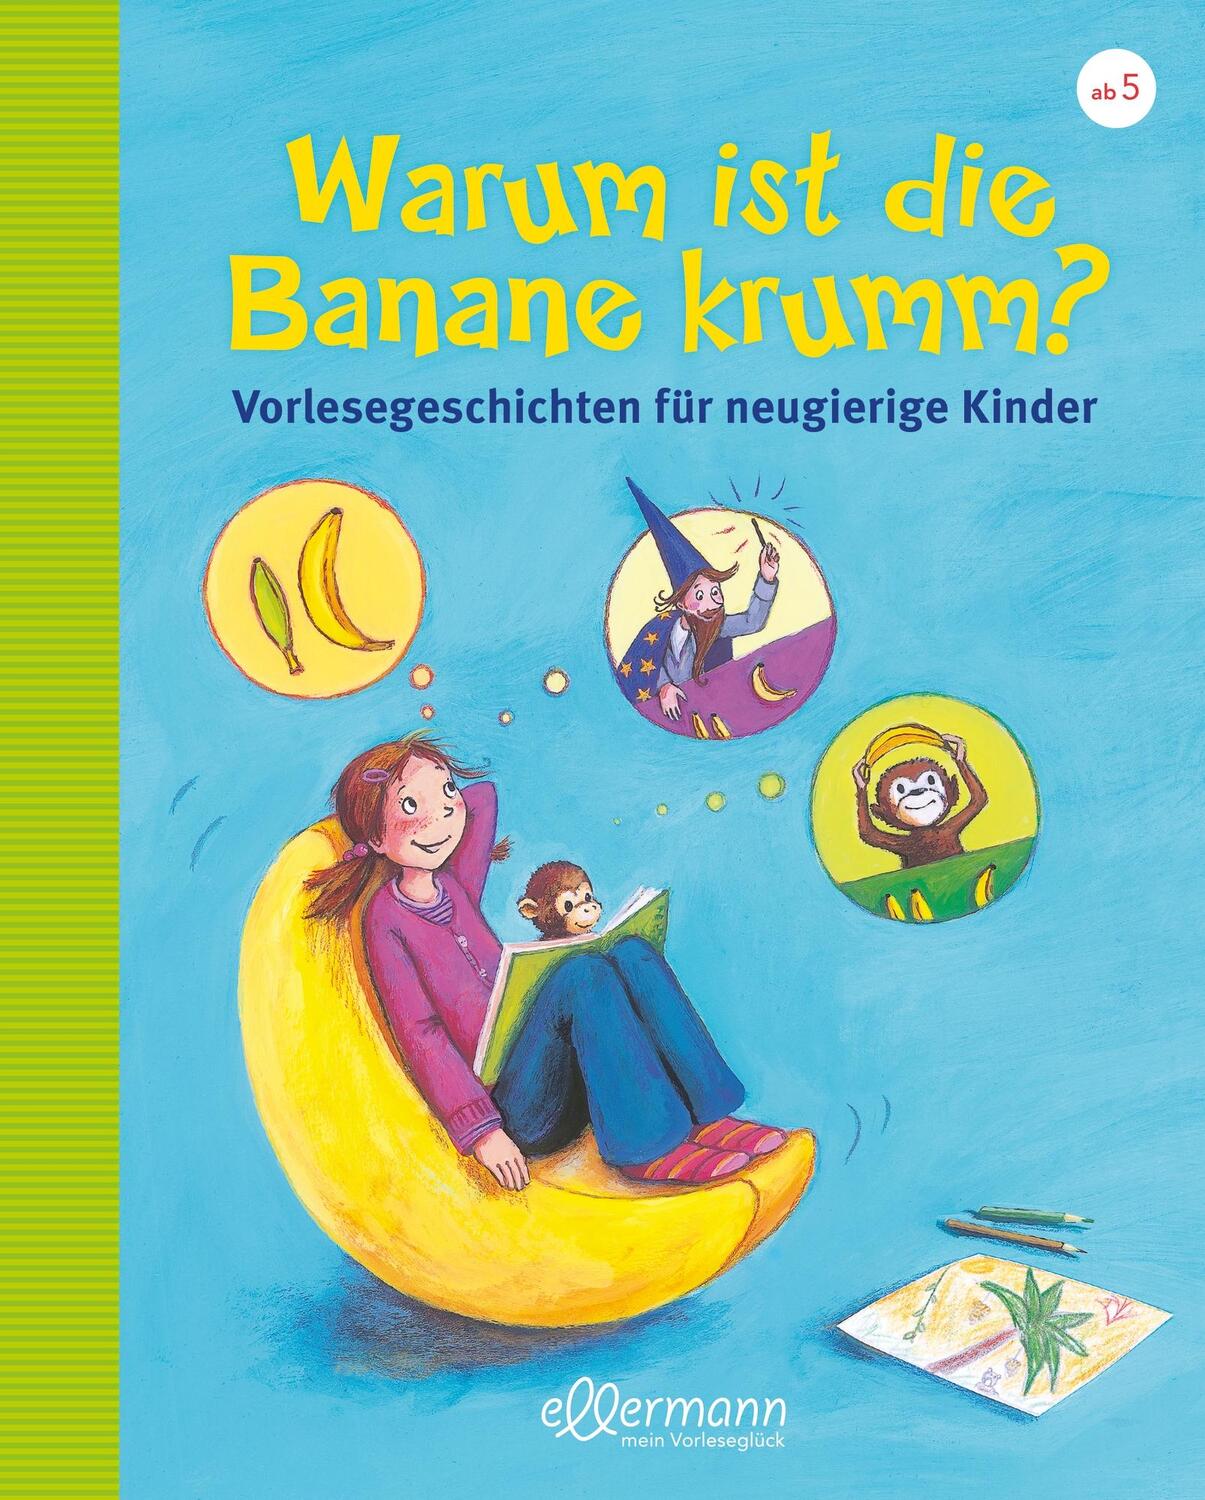 Warum ist die Banane krumm? Vorlesegeschichten für neugierige Kinder - Dreller, Christian